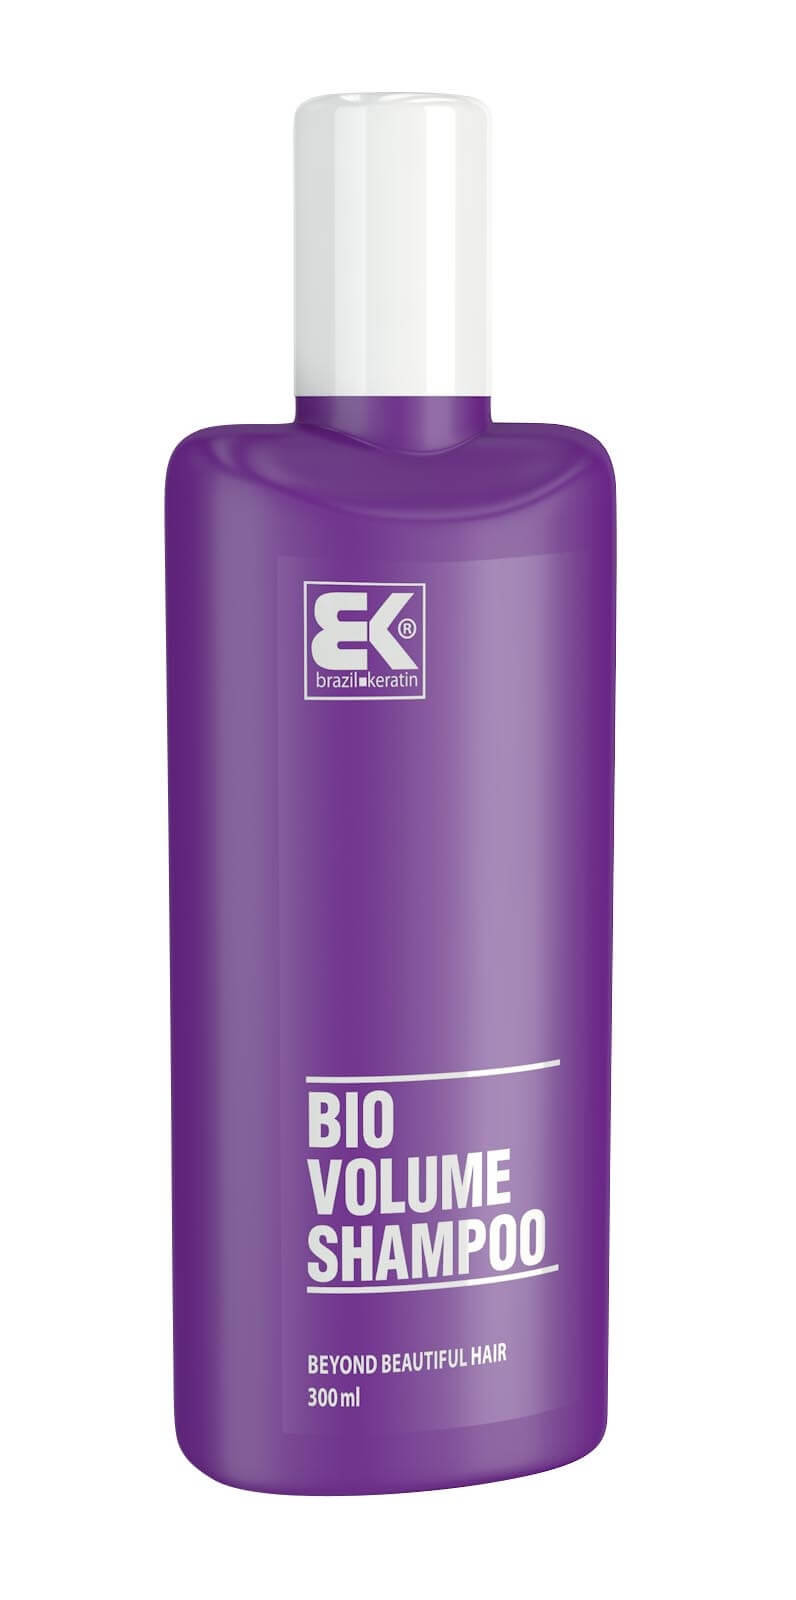 Zobrazit detail výrobku Brazil Keratin Šampon pro objem vlasů (Shampoo Volume Bio) 300 ml